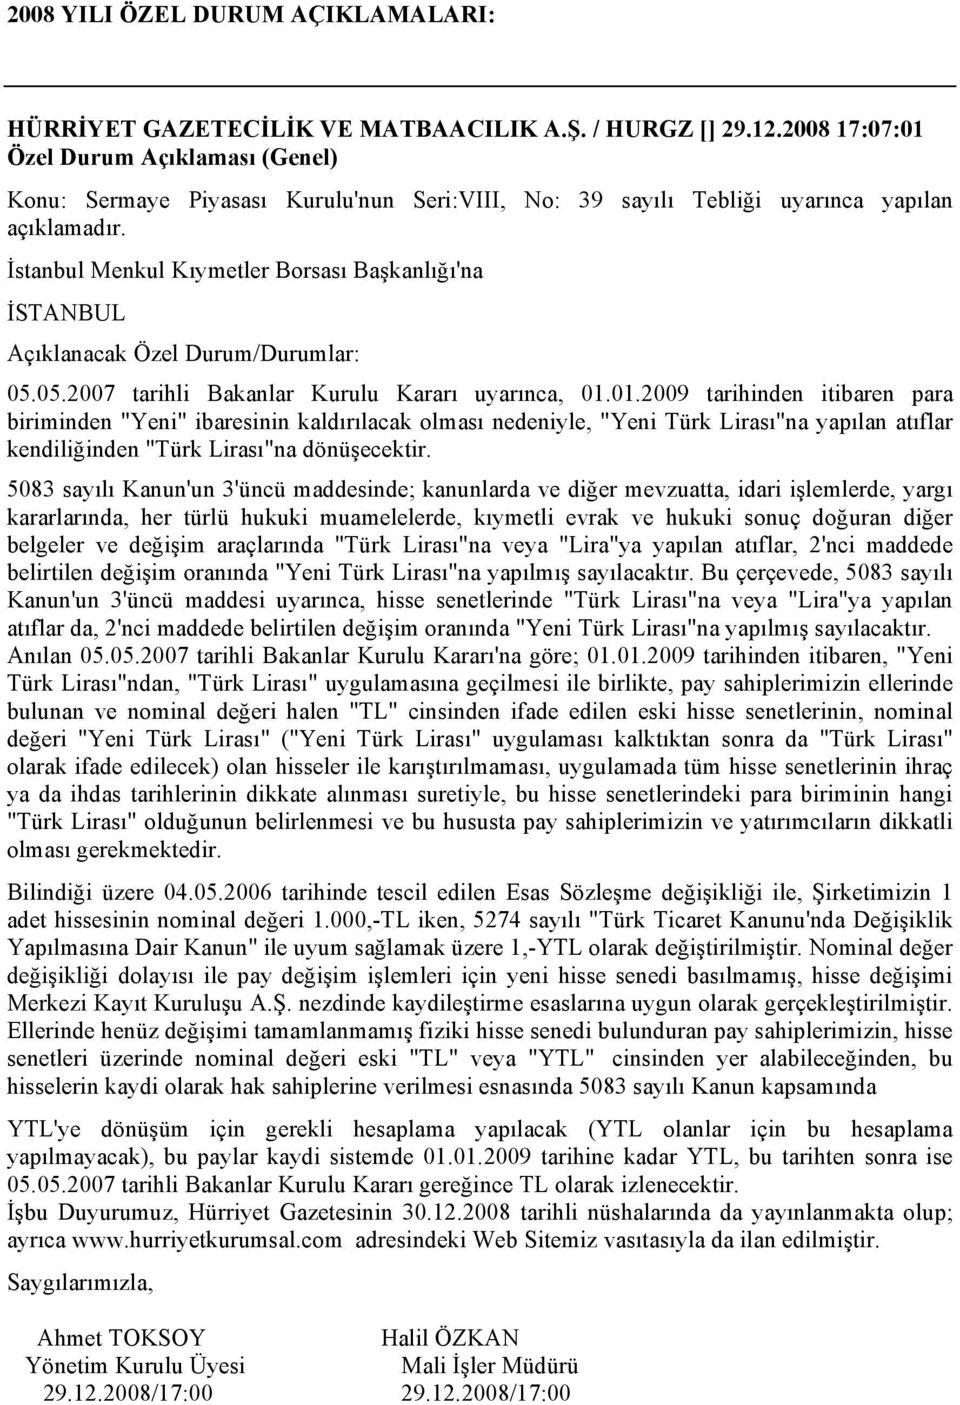 01.2009 tarihinden itibaren para biriminden "Yeni" ibaresinin kaldırılacak olması nedeniyle, "Yeni Türk Lirası"na yapılan atıflar kendiliğinden "Türk Lirası"na dönüşecektir.